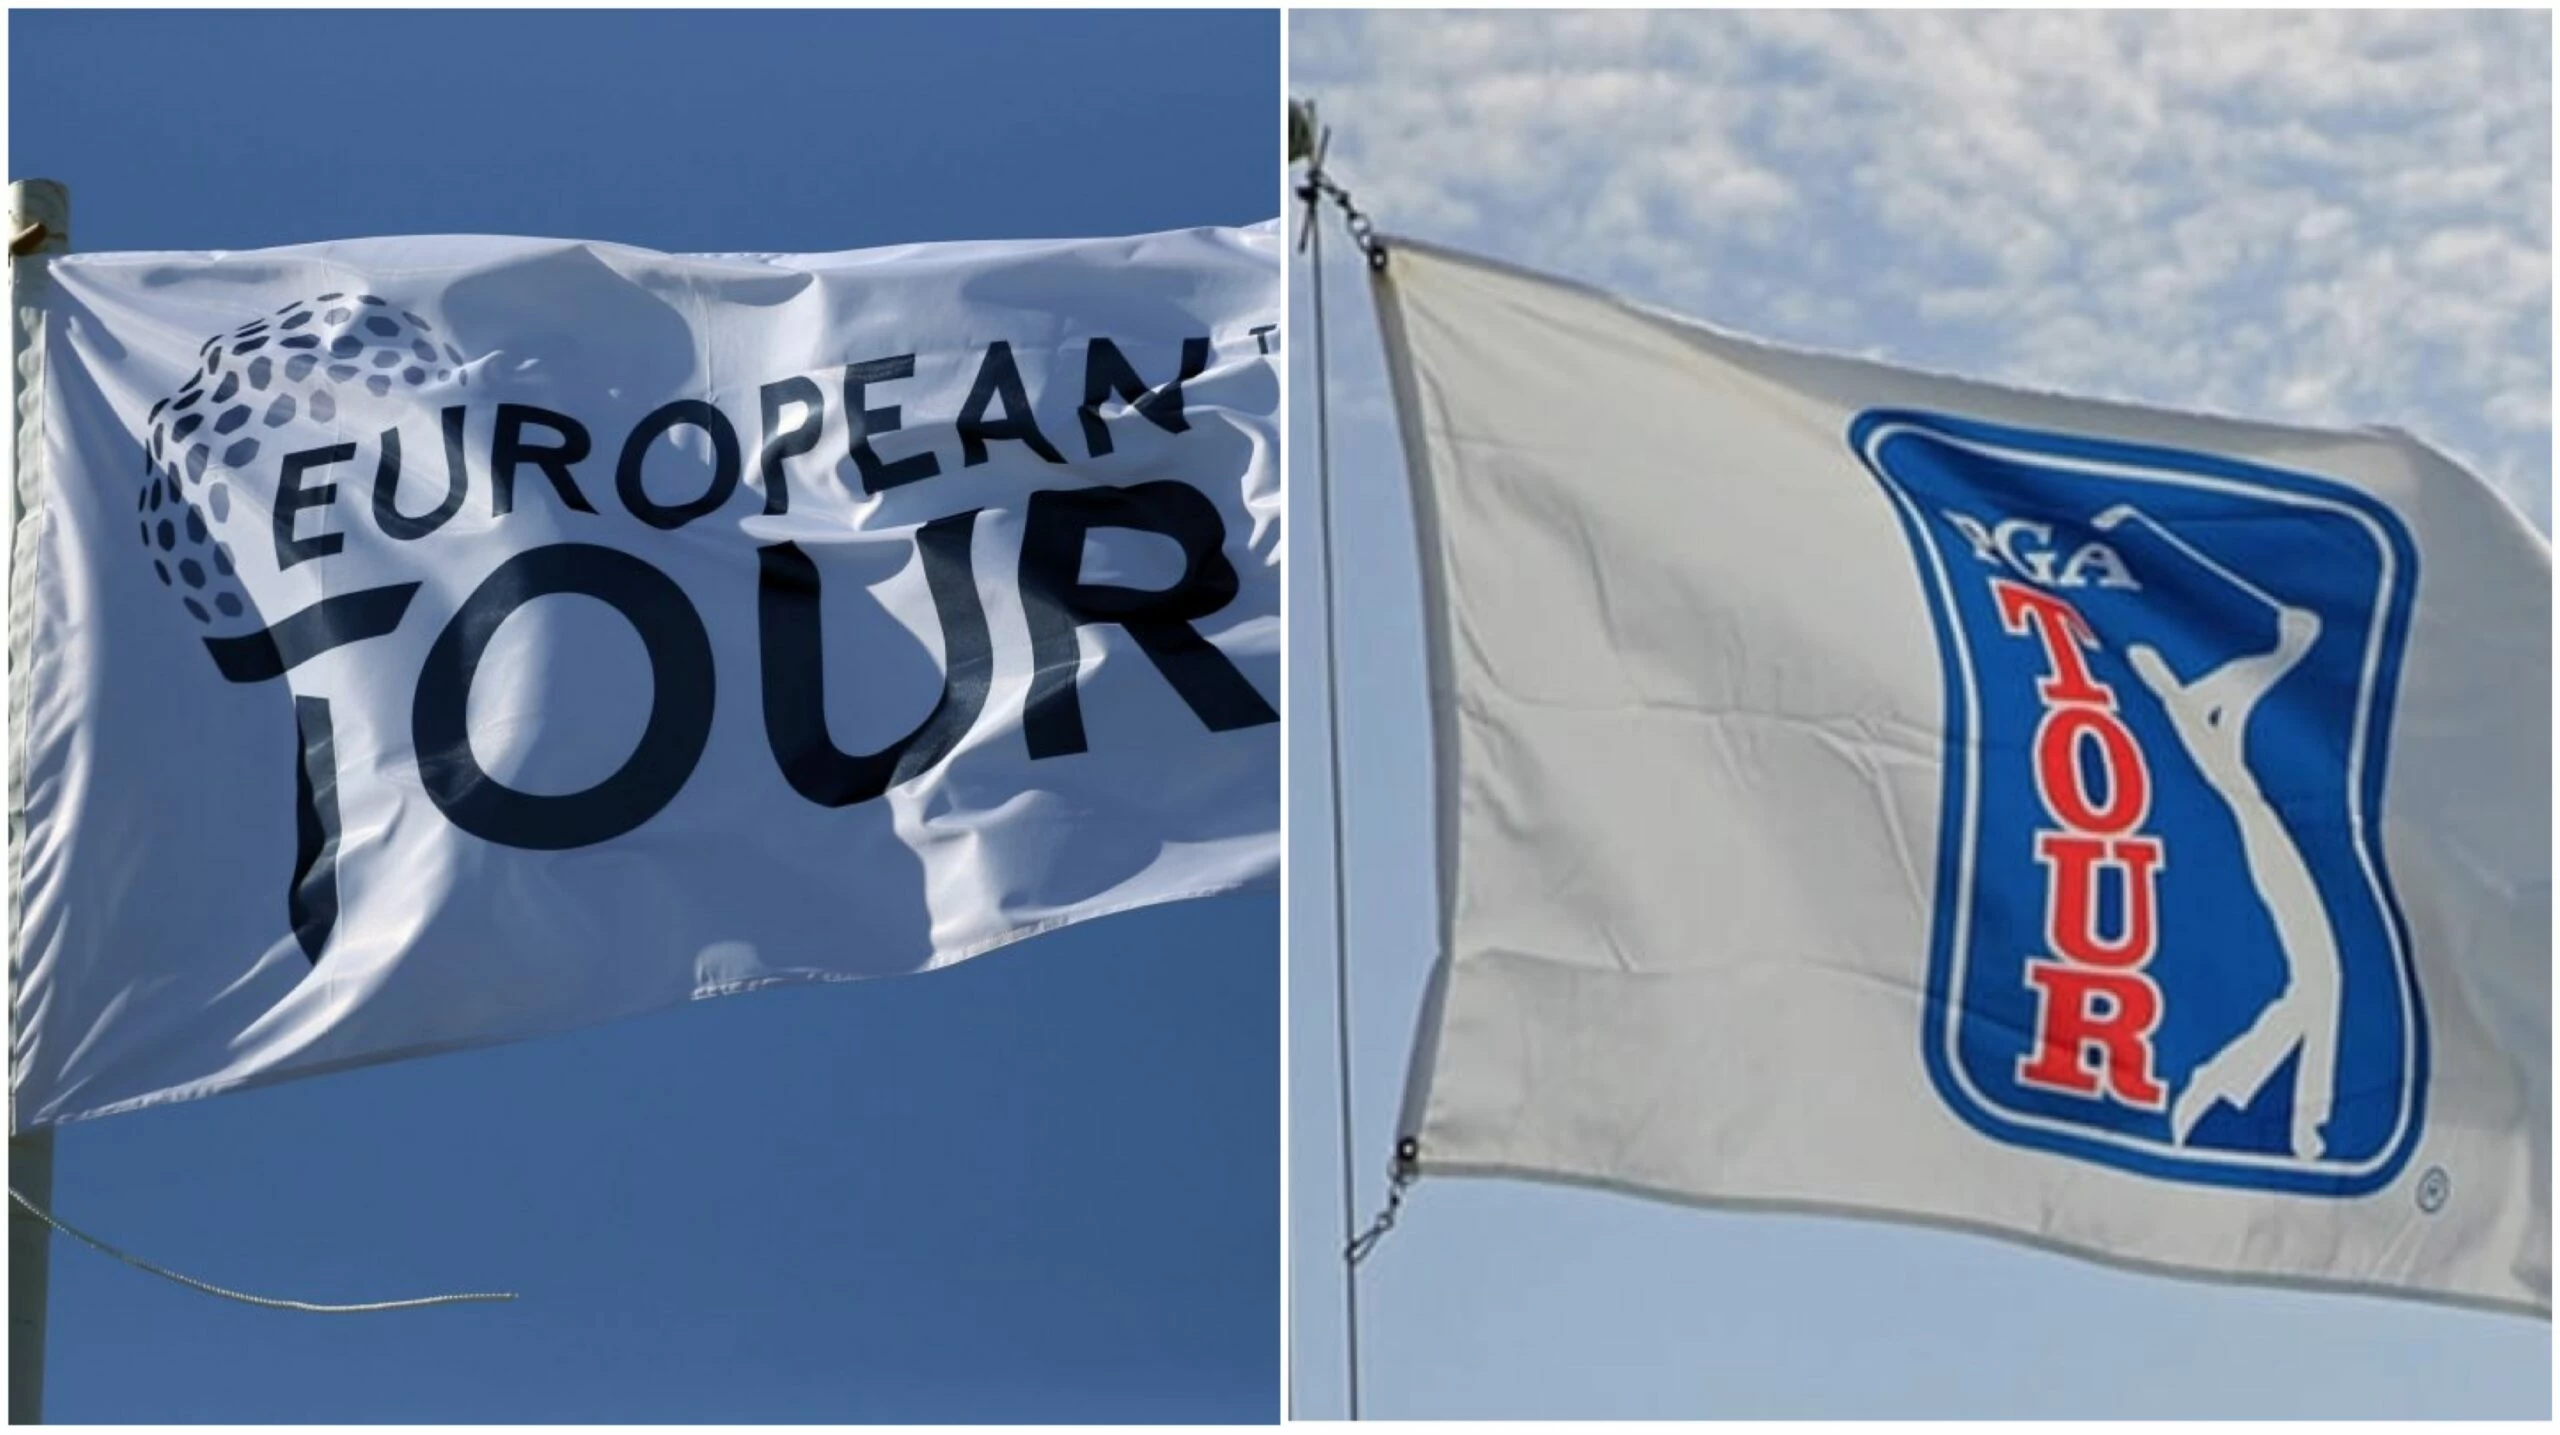 El European Tour y el PGA Tour anuncian una alianza estratégica global